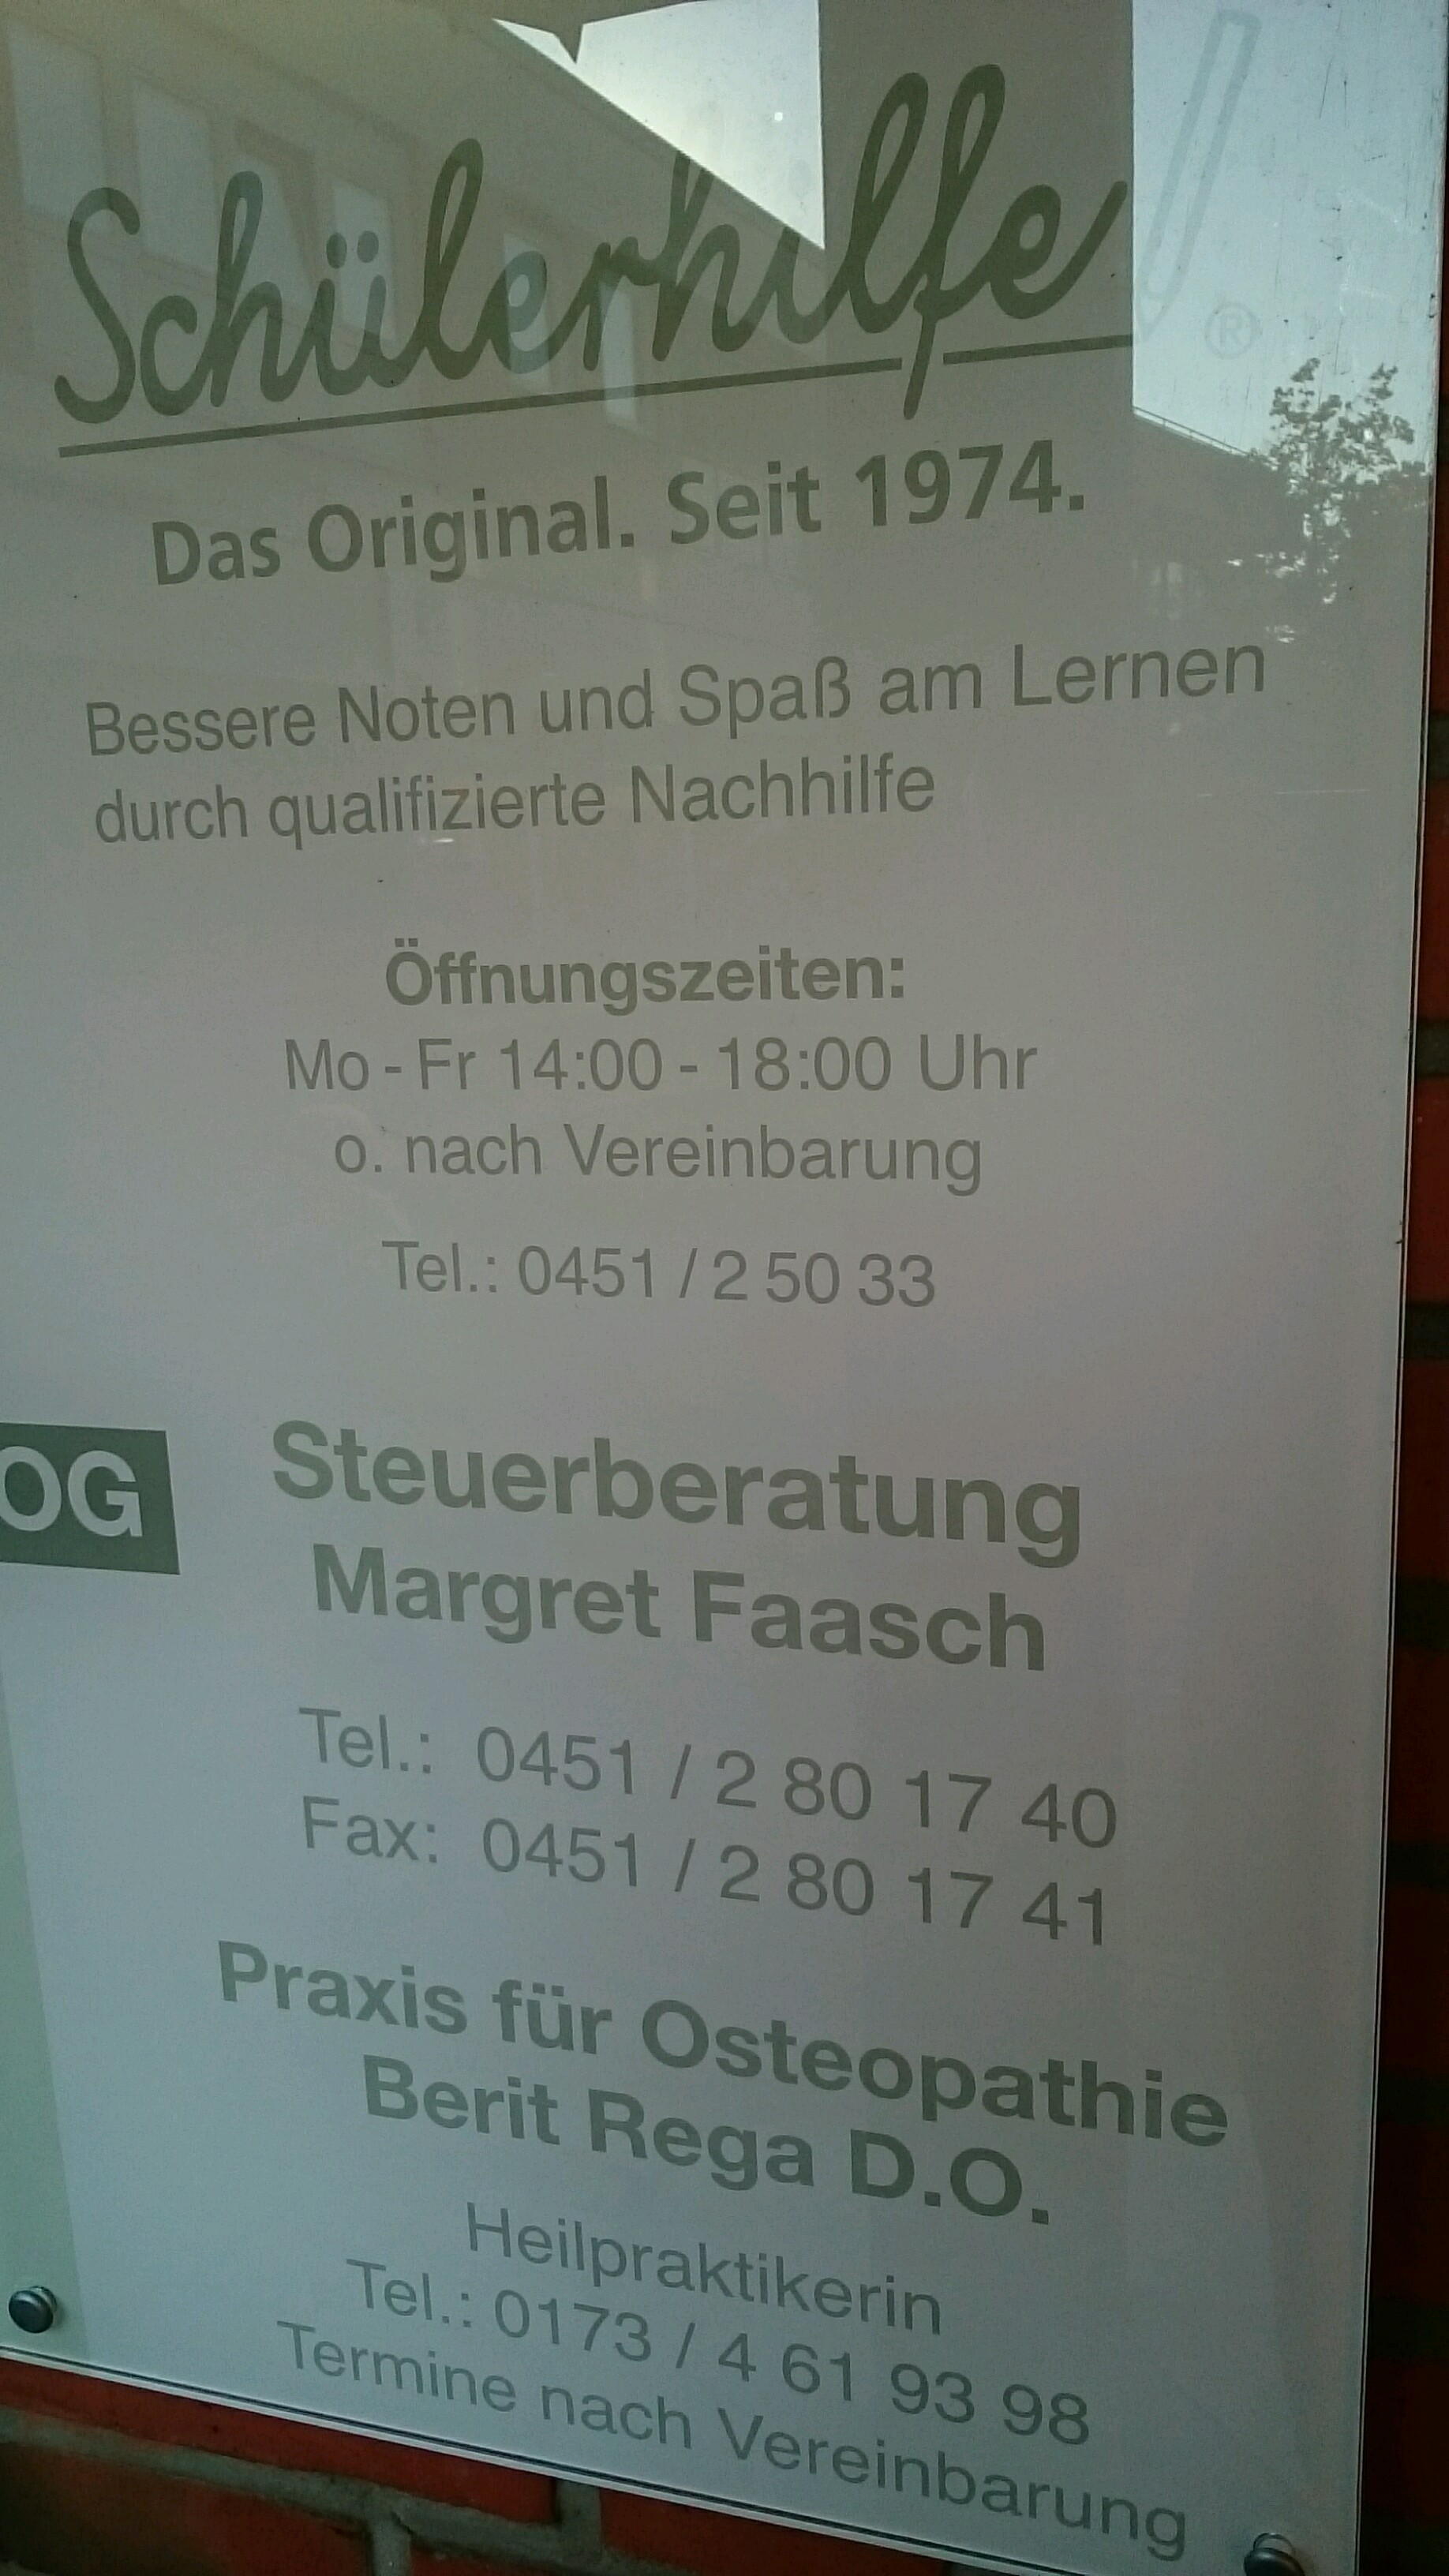 Bild 2 Faasch in Bad Schwartau